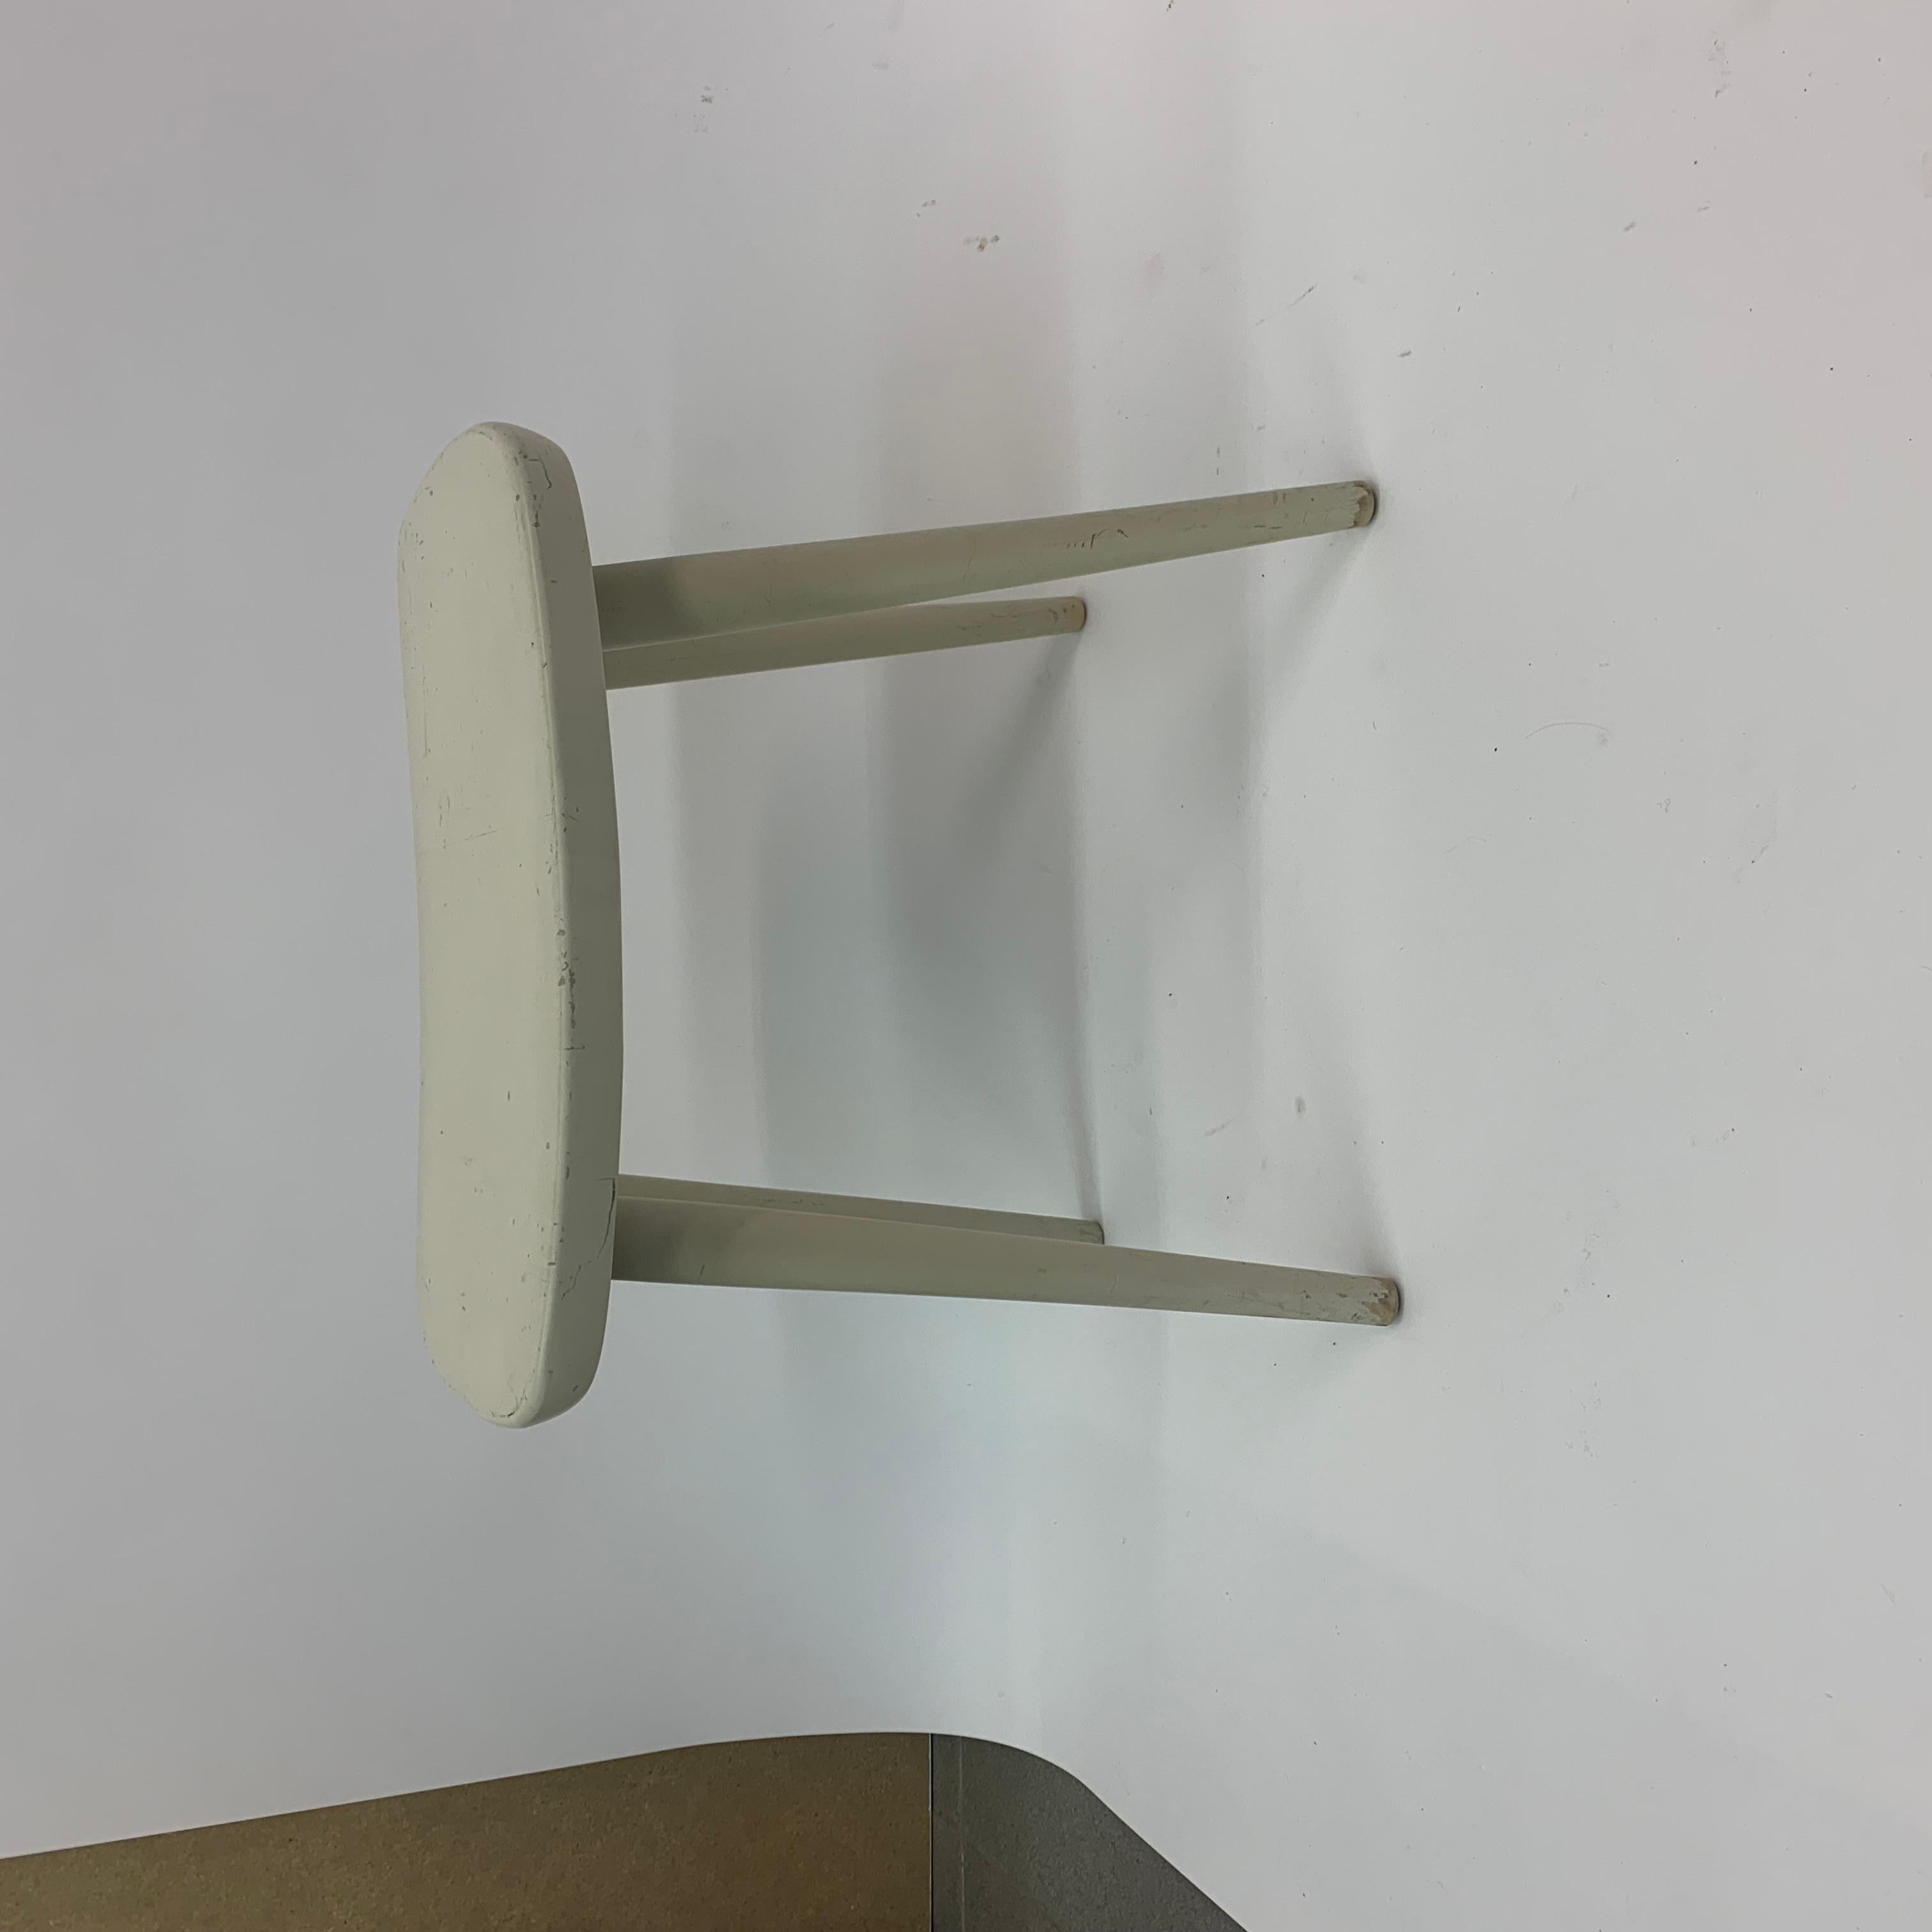 Yngve Ekstrom for stol AB stool 1950’s

Condition: Original paint has some wear.
Material: Wood
Dimensions: 43,4cm H 46cm W 31 cm D